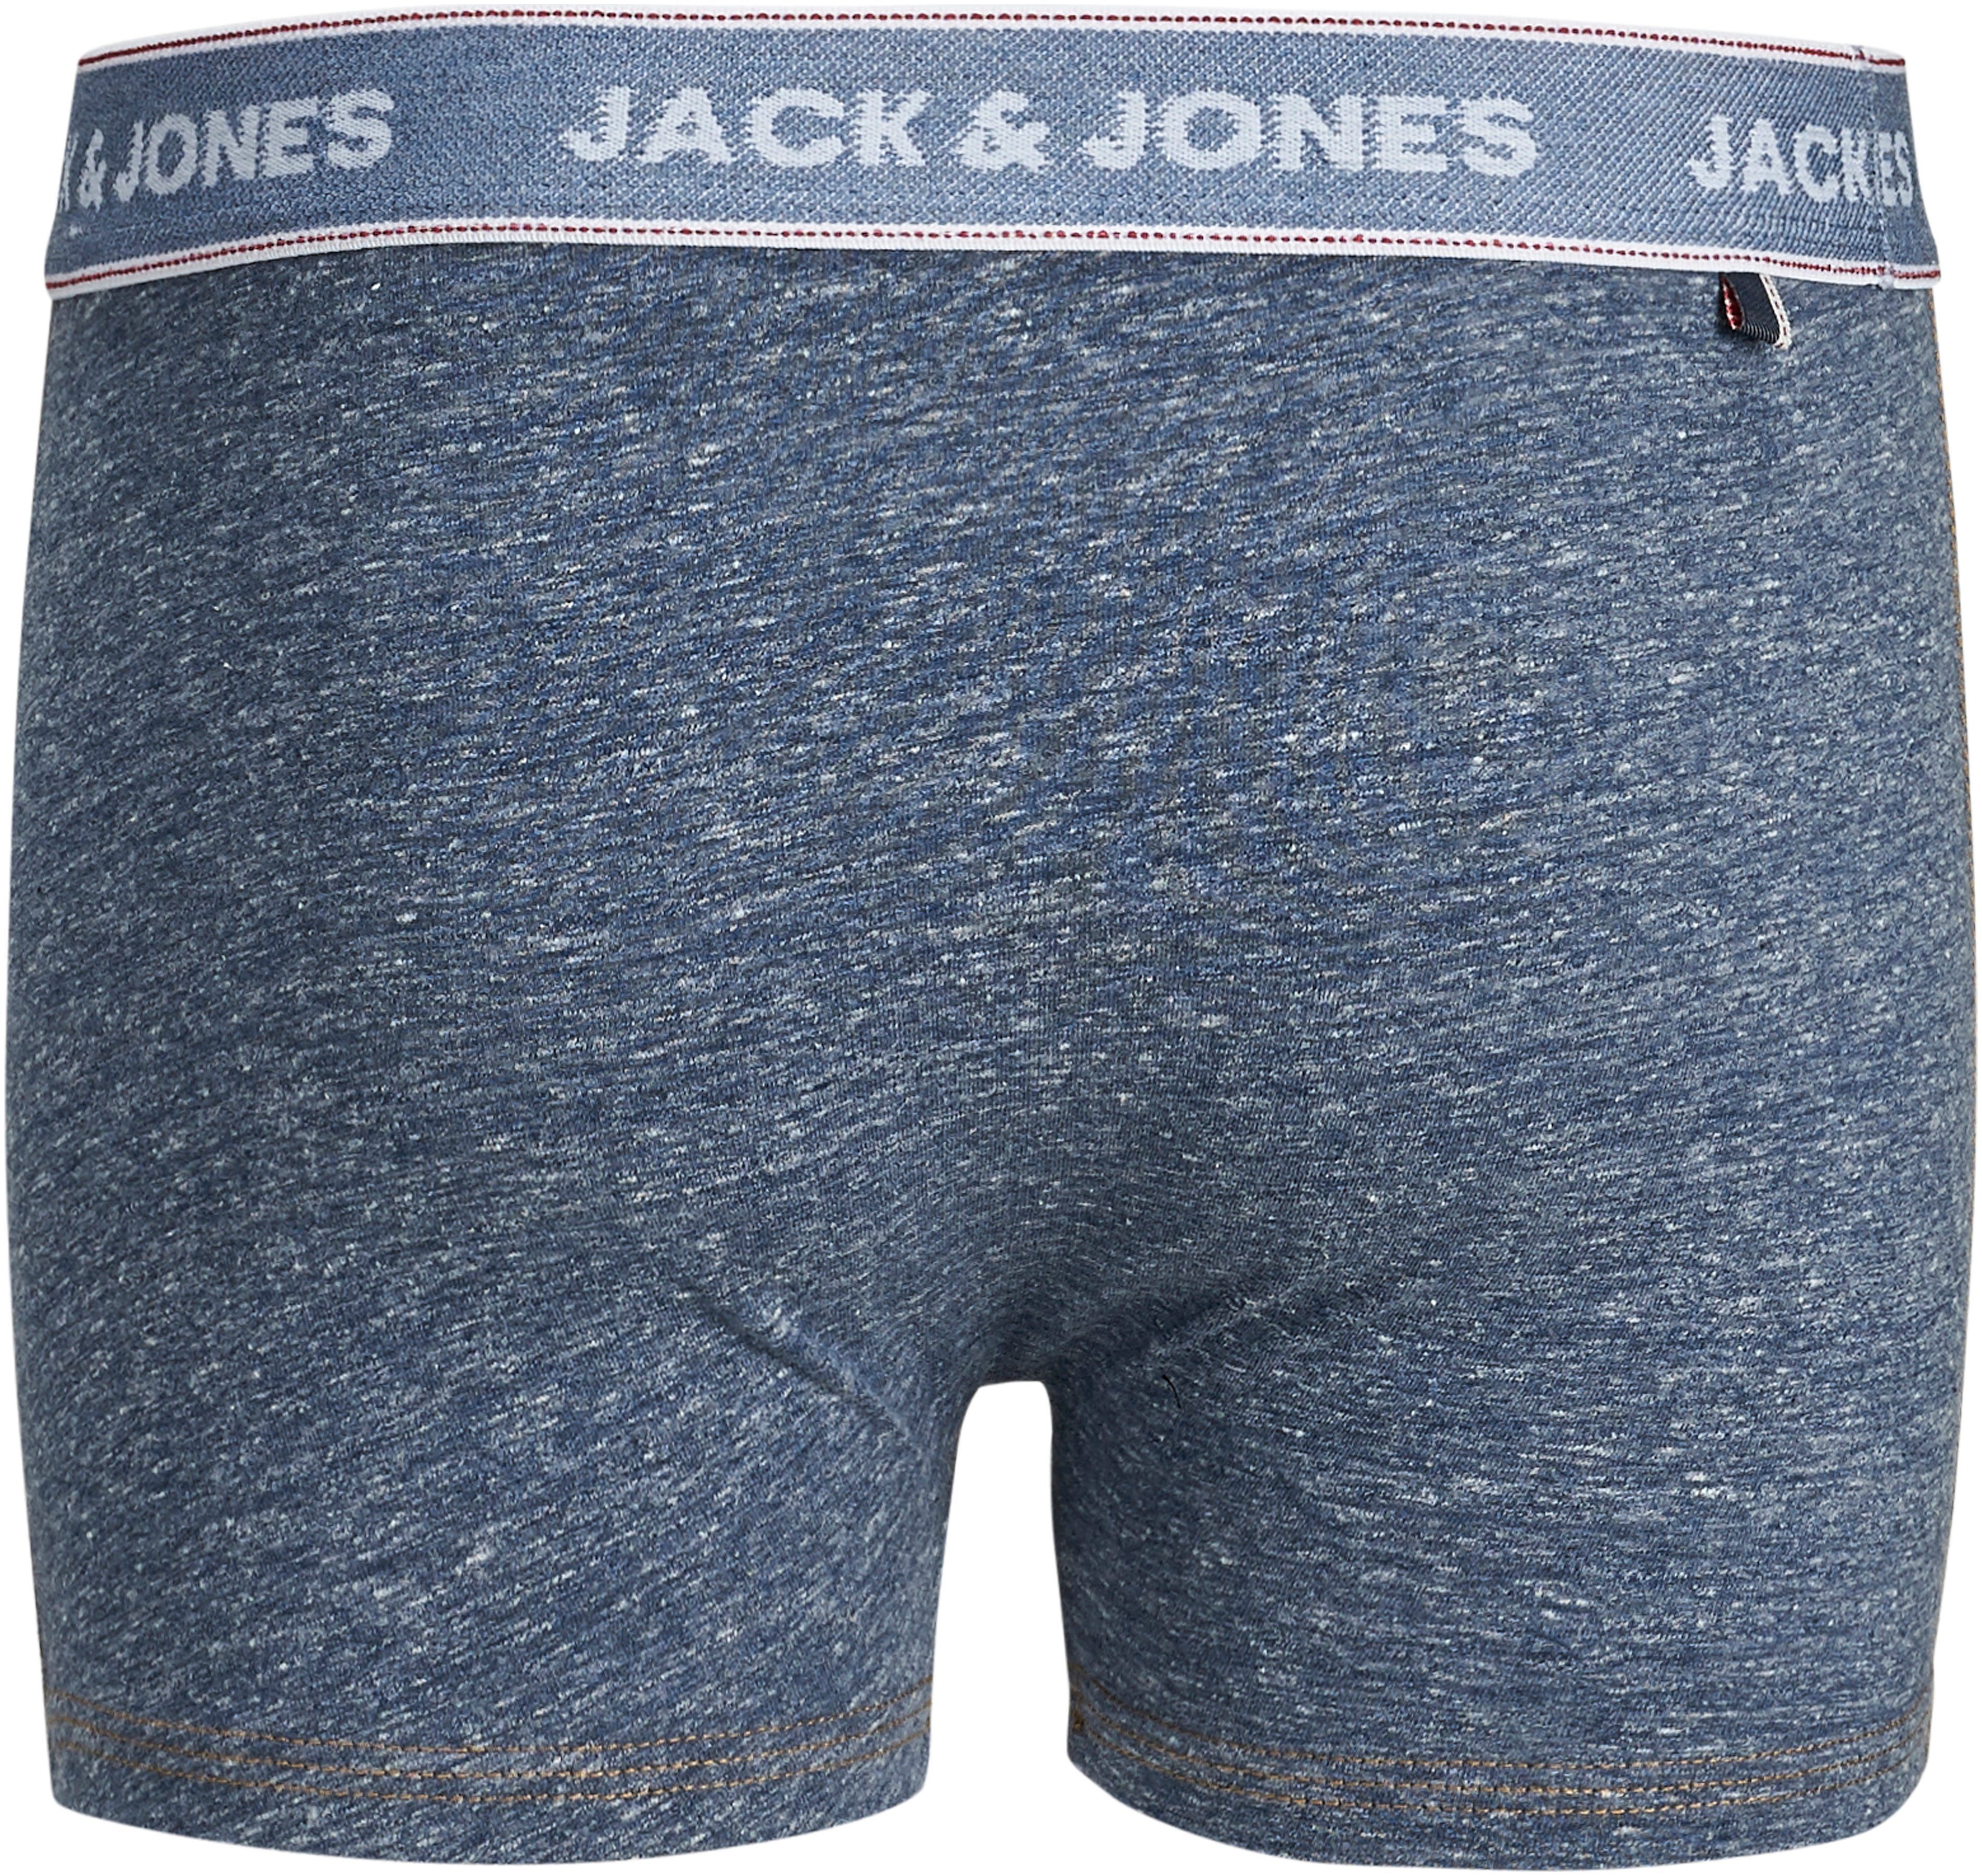 Wäsche/Bademode Unterwäsche Jack & Jones Junior Boxershorts in melierter Optik (3 Stück)